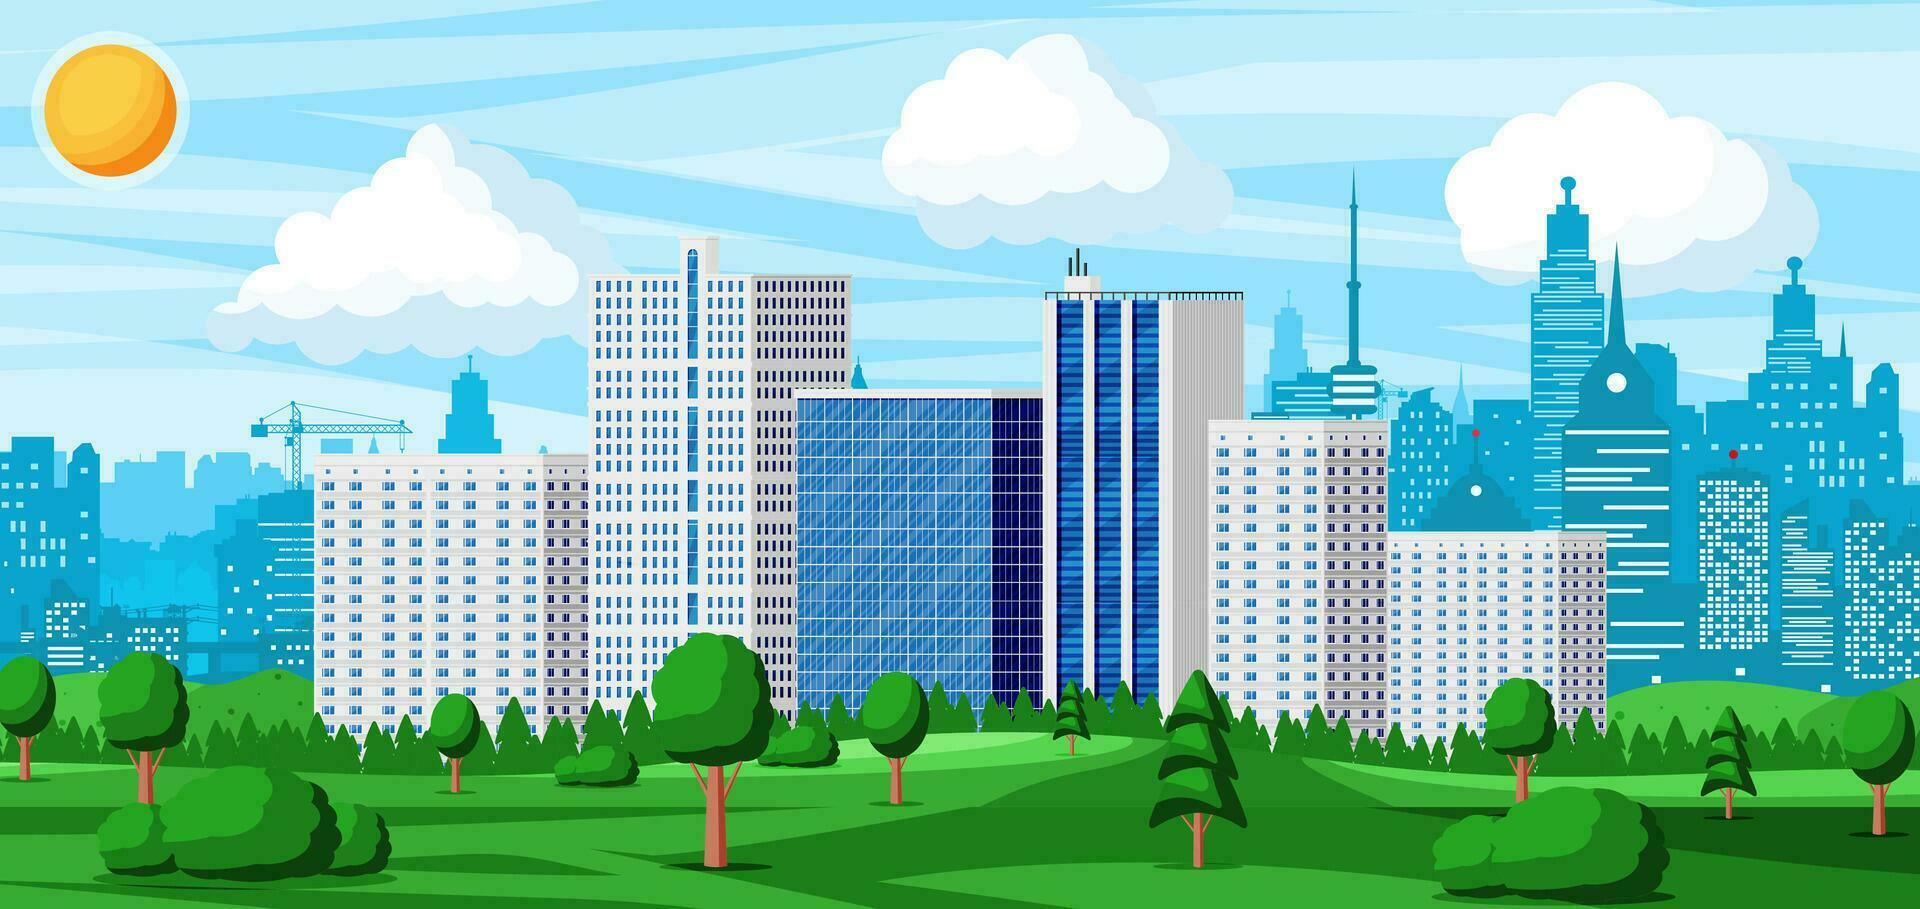 stad park concept. stedelijk Woud panorama. stadsgezicht met gebouwen en bomen. lucht met wolken en zon. vrije tijd tijd in zomer stad park. vector illustratie in vlak stijl